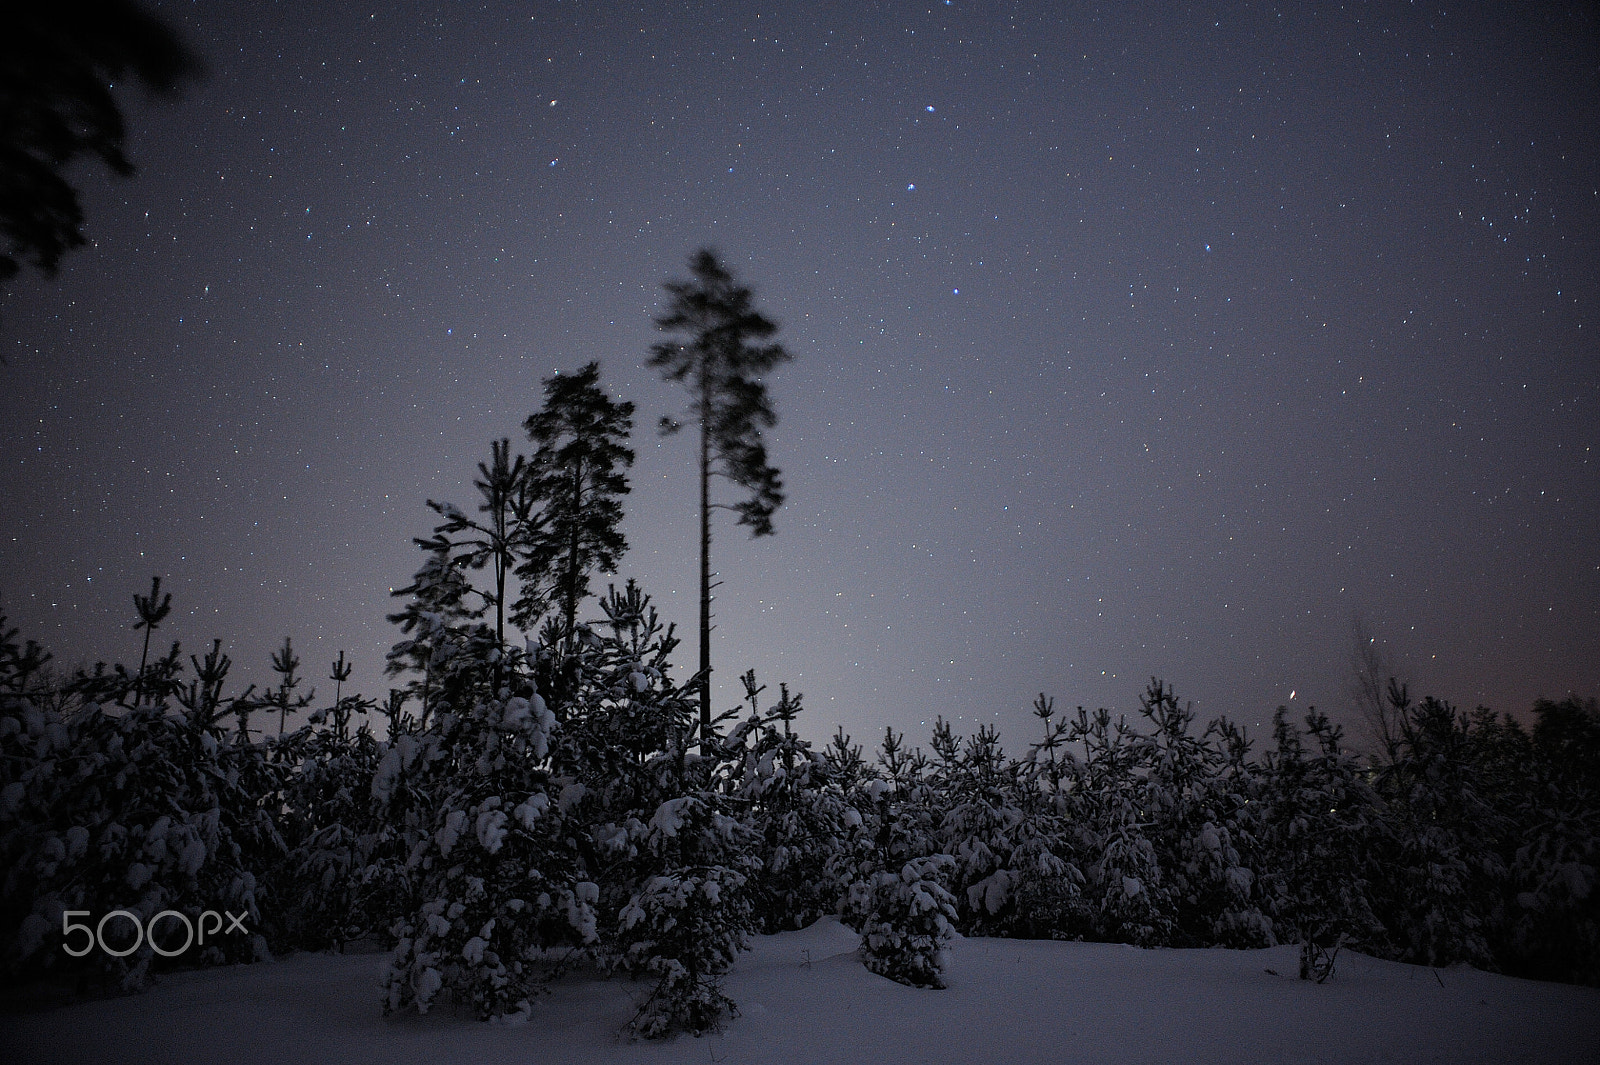 Nikon D700 + AF Nikkor 20mm f/2.8 sample photo. Winter fairytale photography